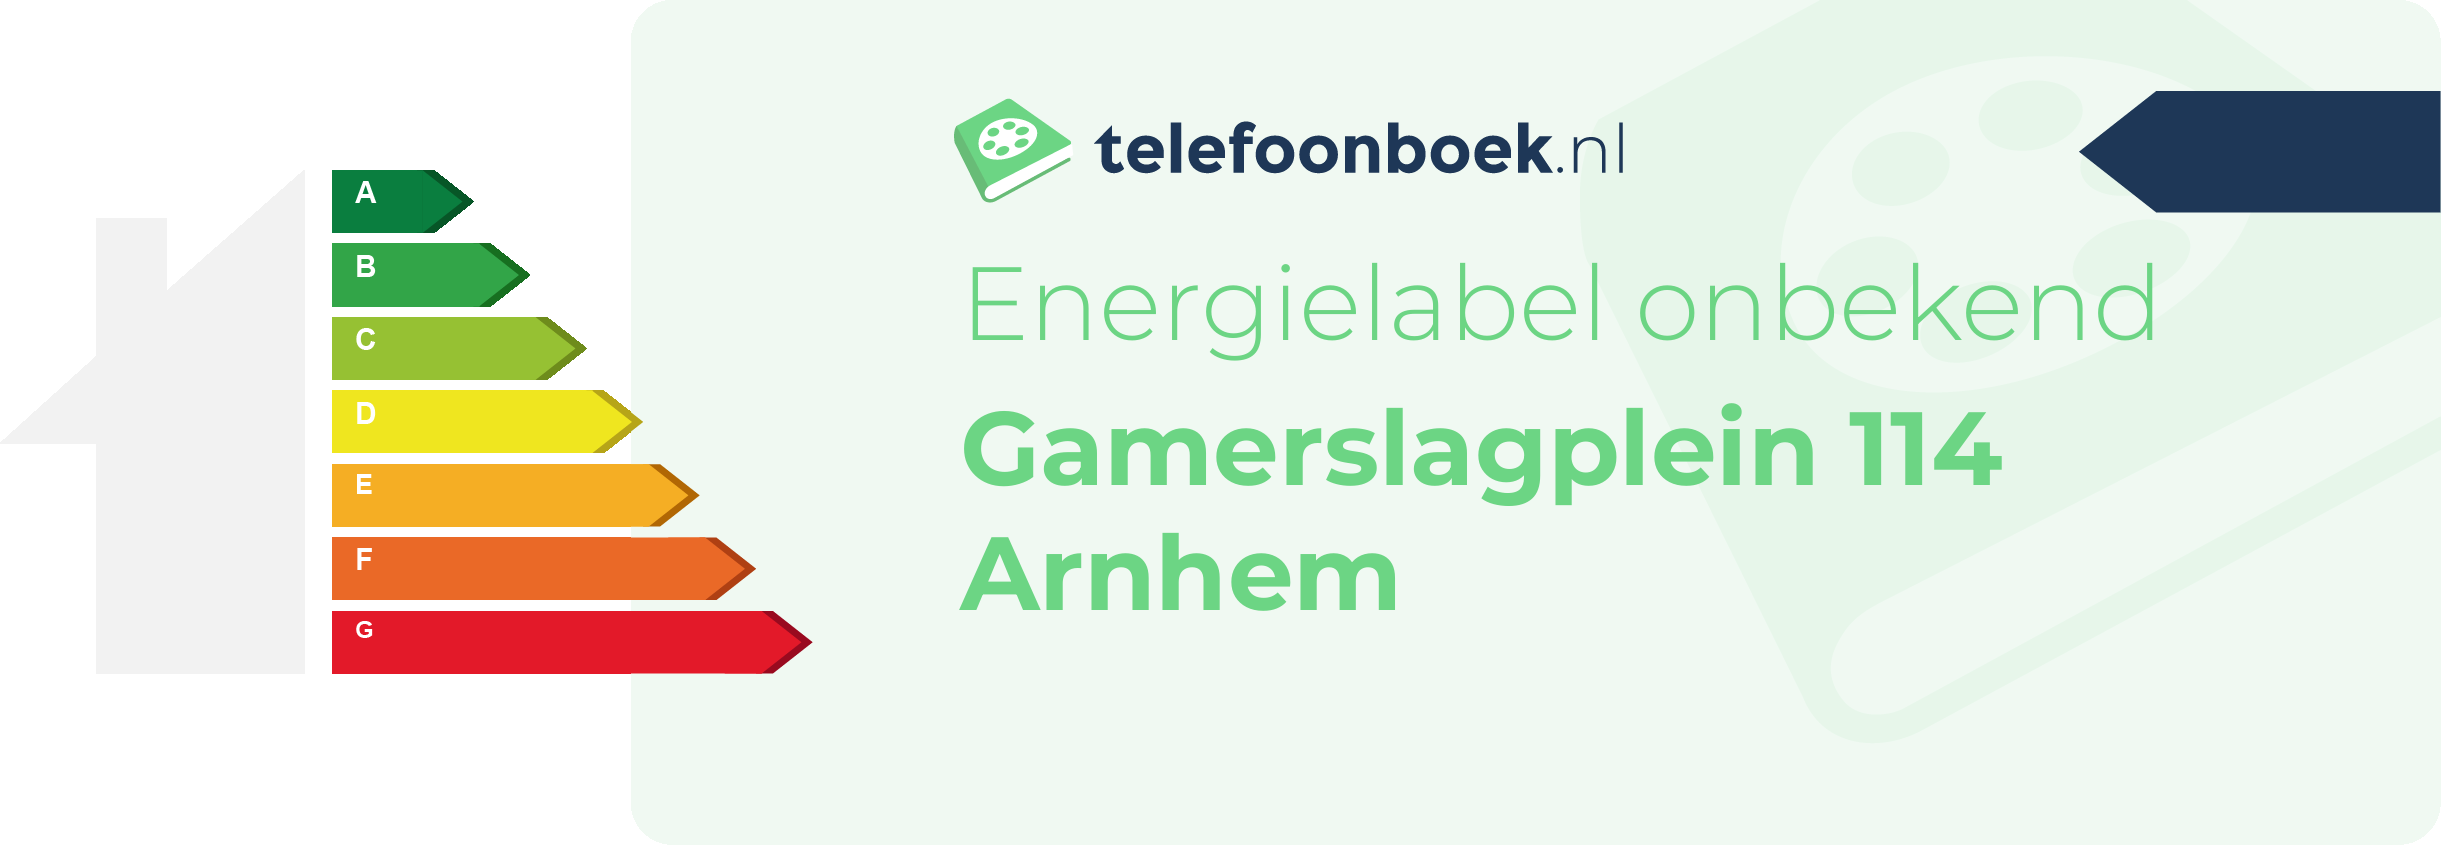 Energielabel Gamerslagplein 114 Arnhem